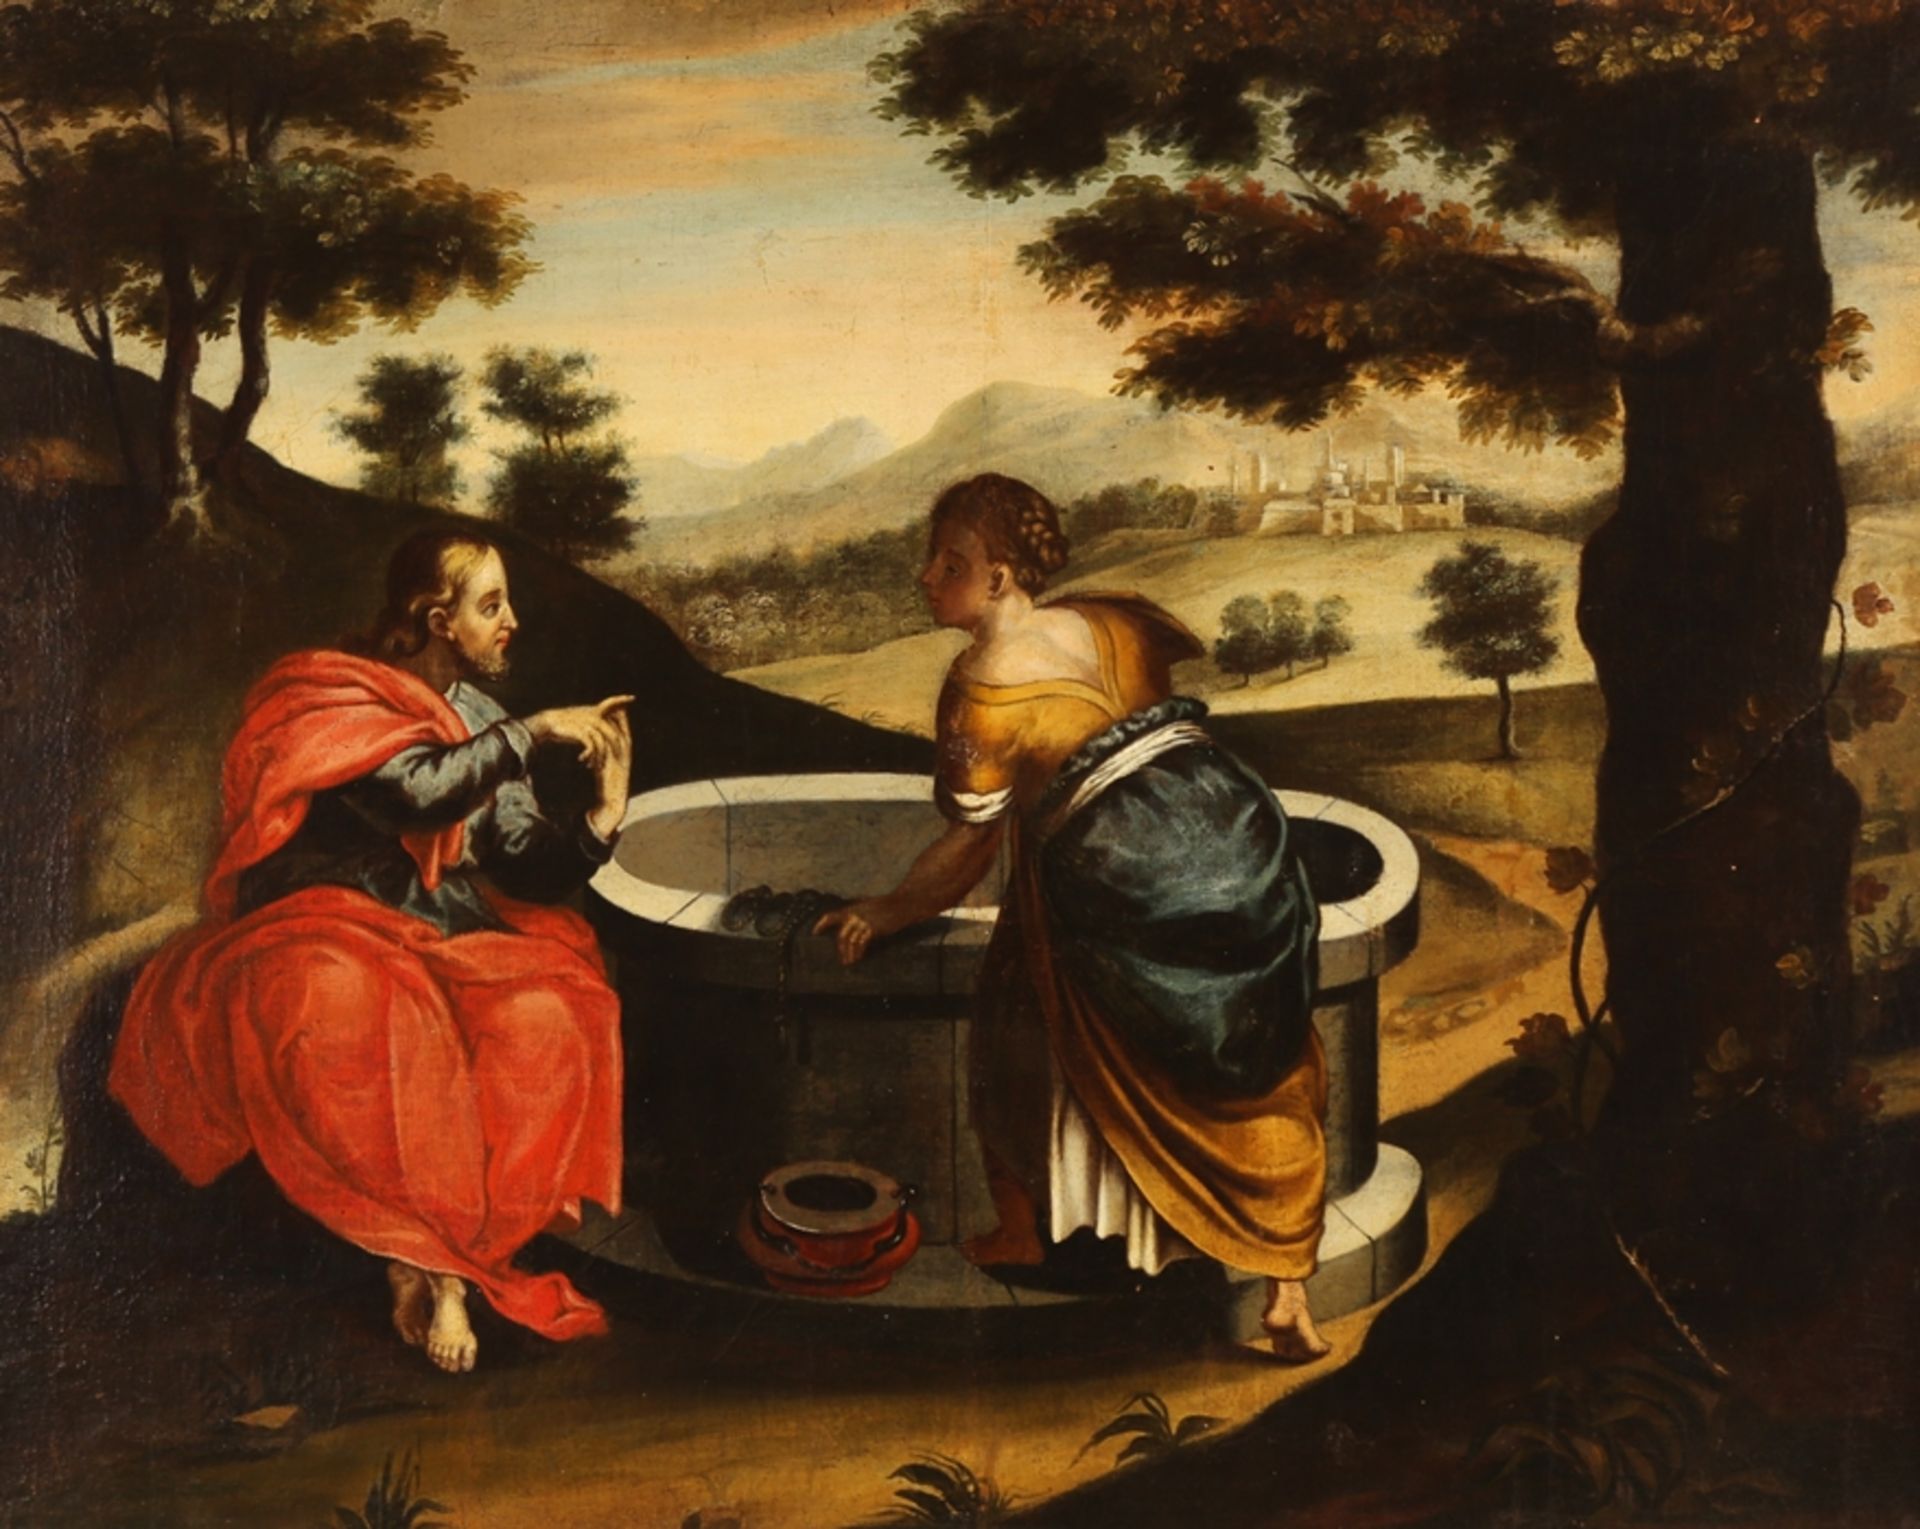 Deutscher Maler frühes 18. Jh. Christus und die Samariterin am Brunnen. Weiter Blick in das Land mi